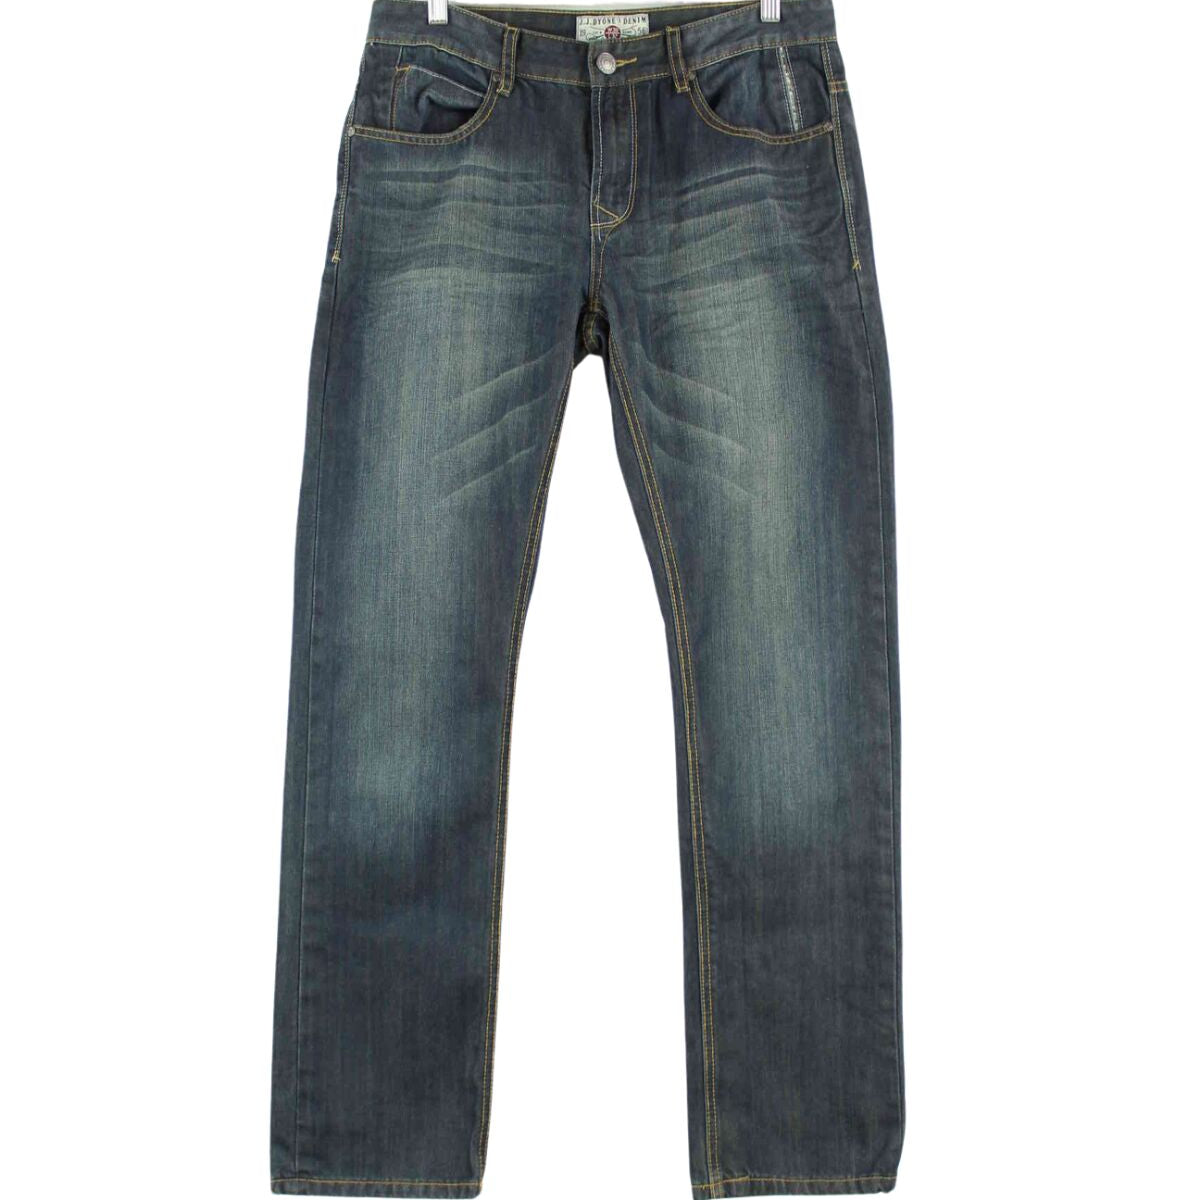 Vintage Jeans Blau W32 L32 (front image)